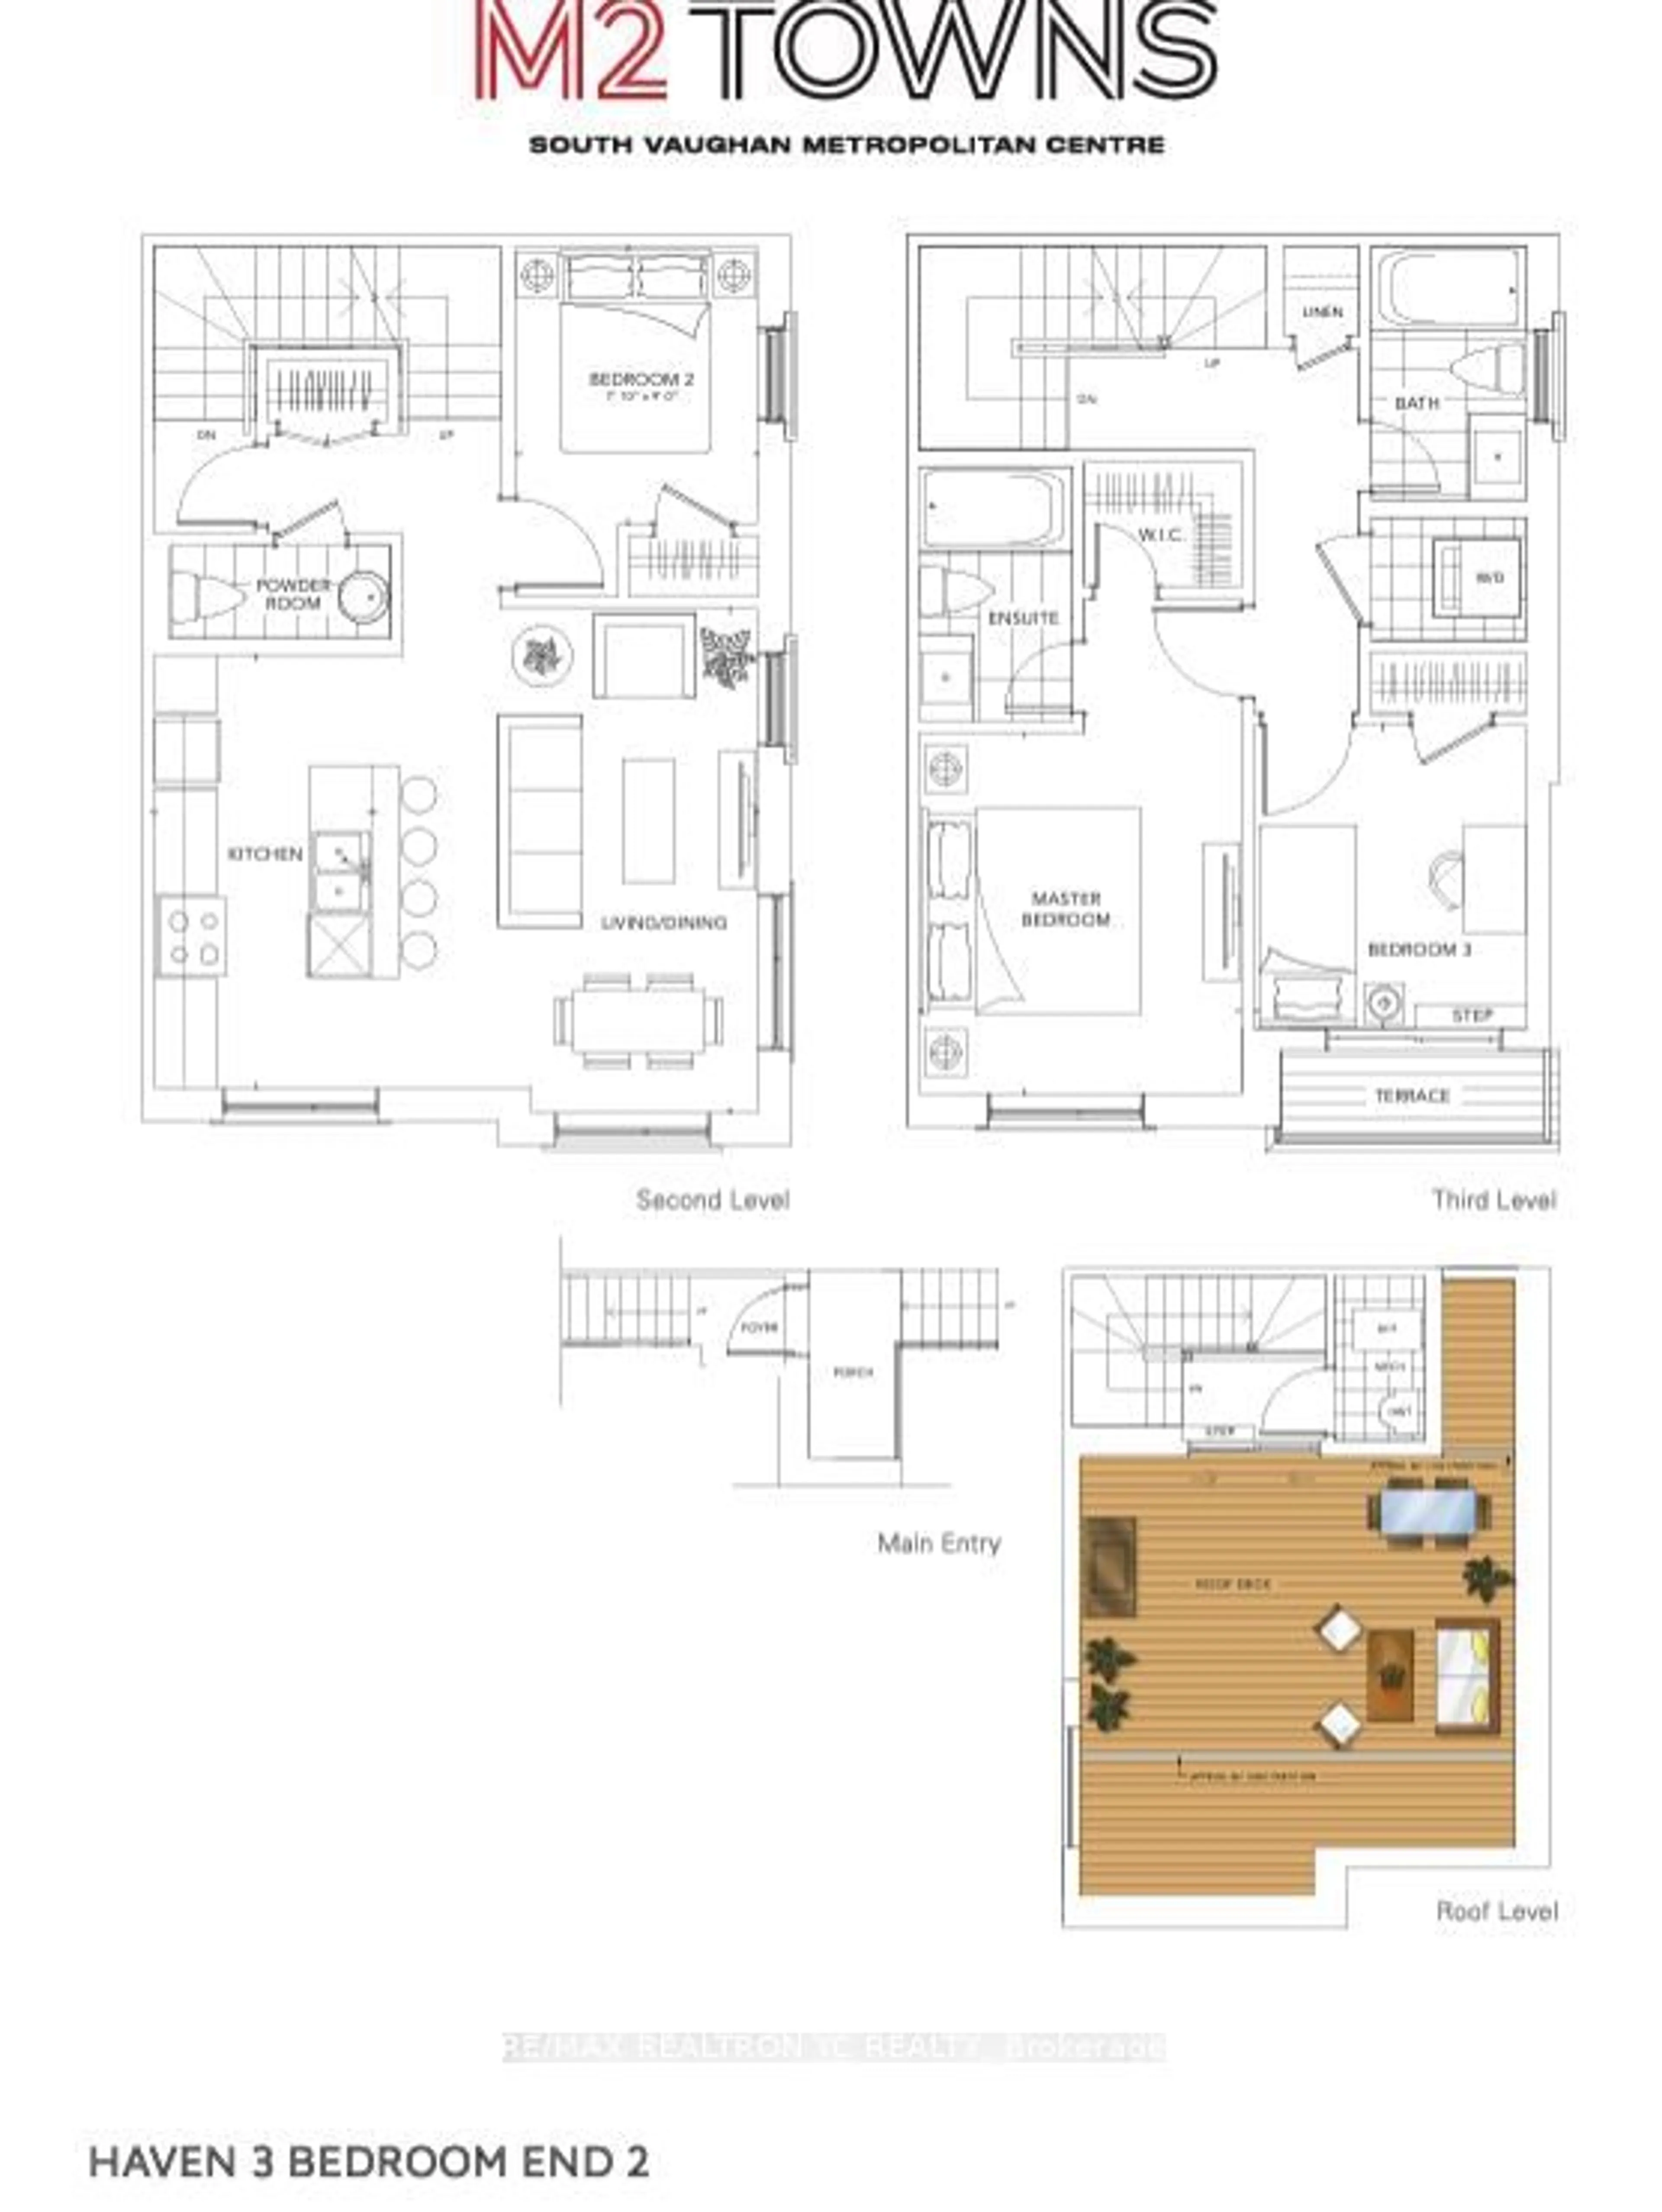 Floor plan for 121 Honeycrisp Cres #Th221, Vaughan Ontario L4K 0N7